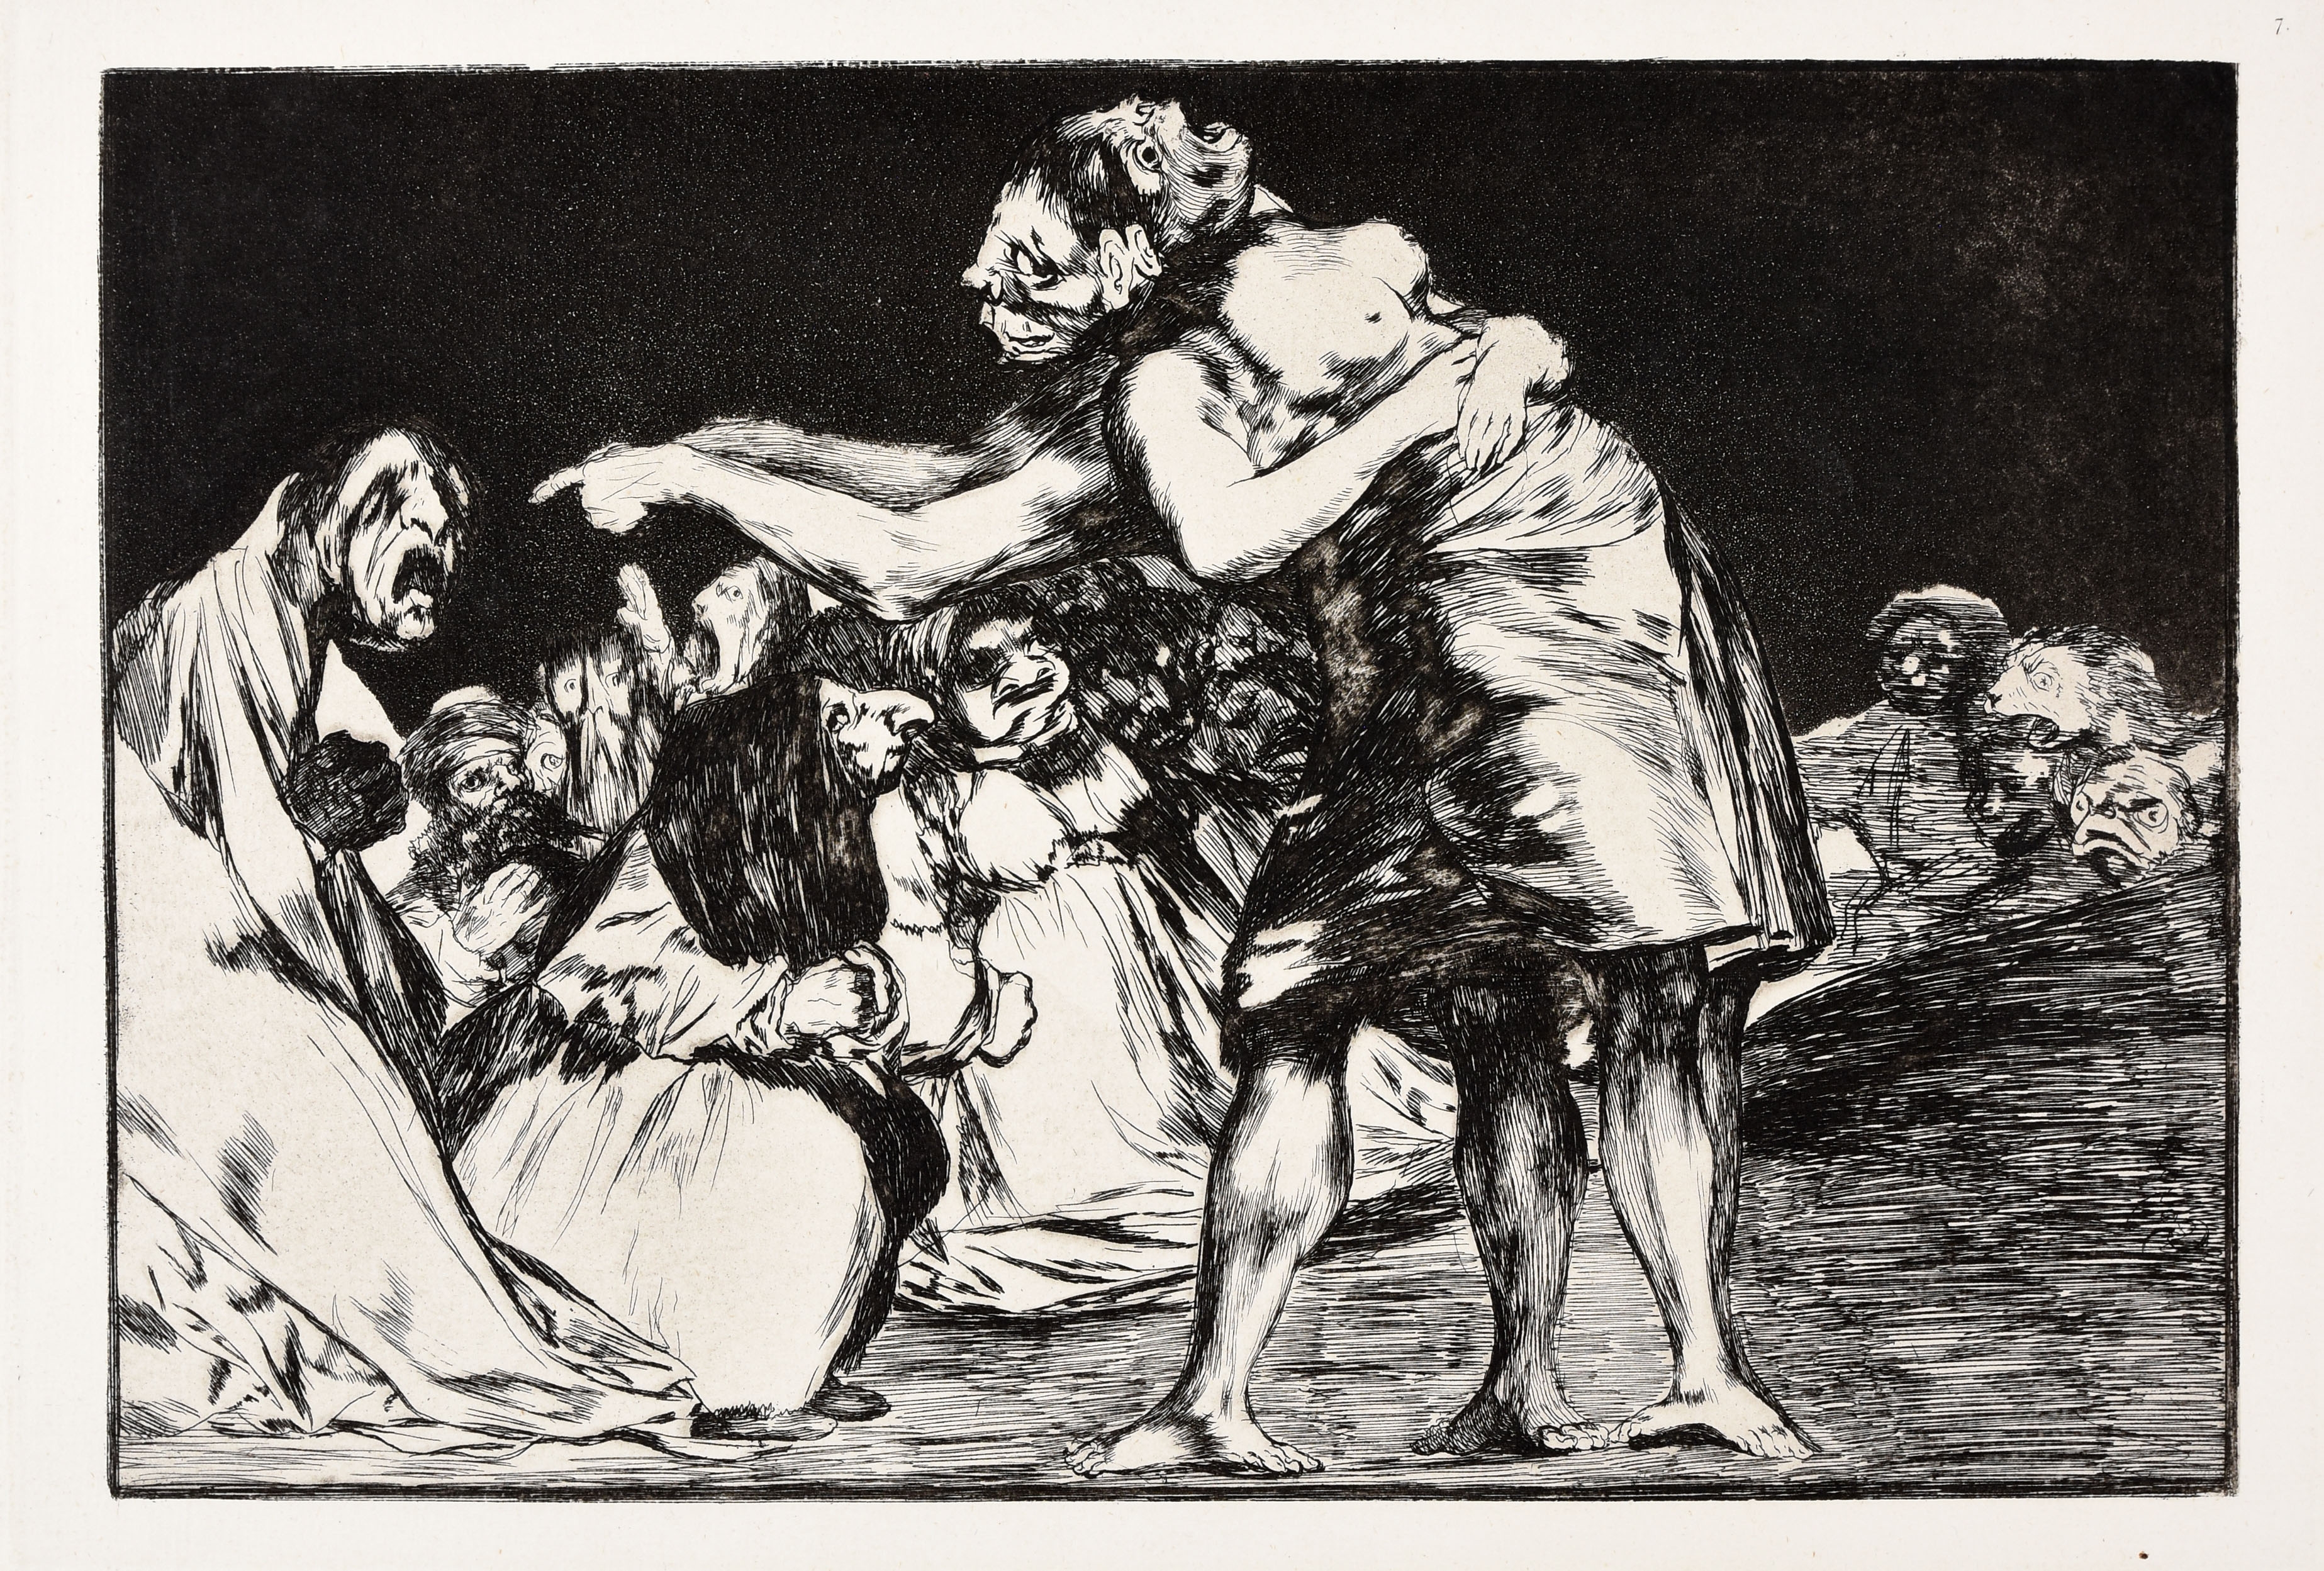 Disparate desordenado by Francisco José de Goya y Lucientes, 1916